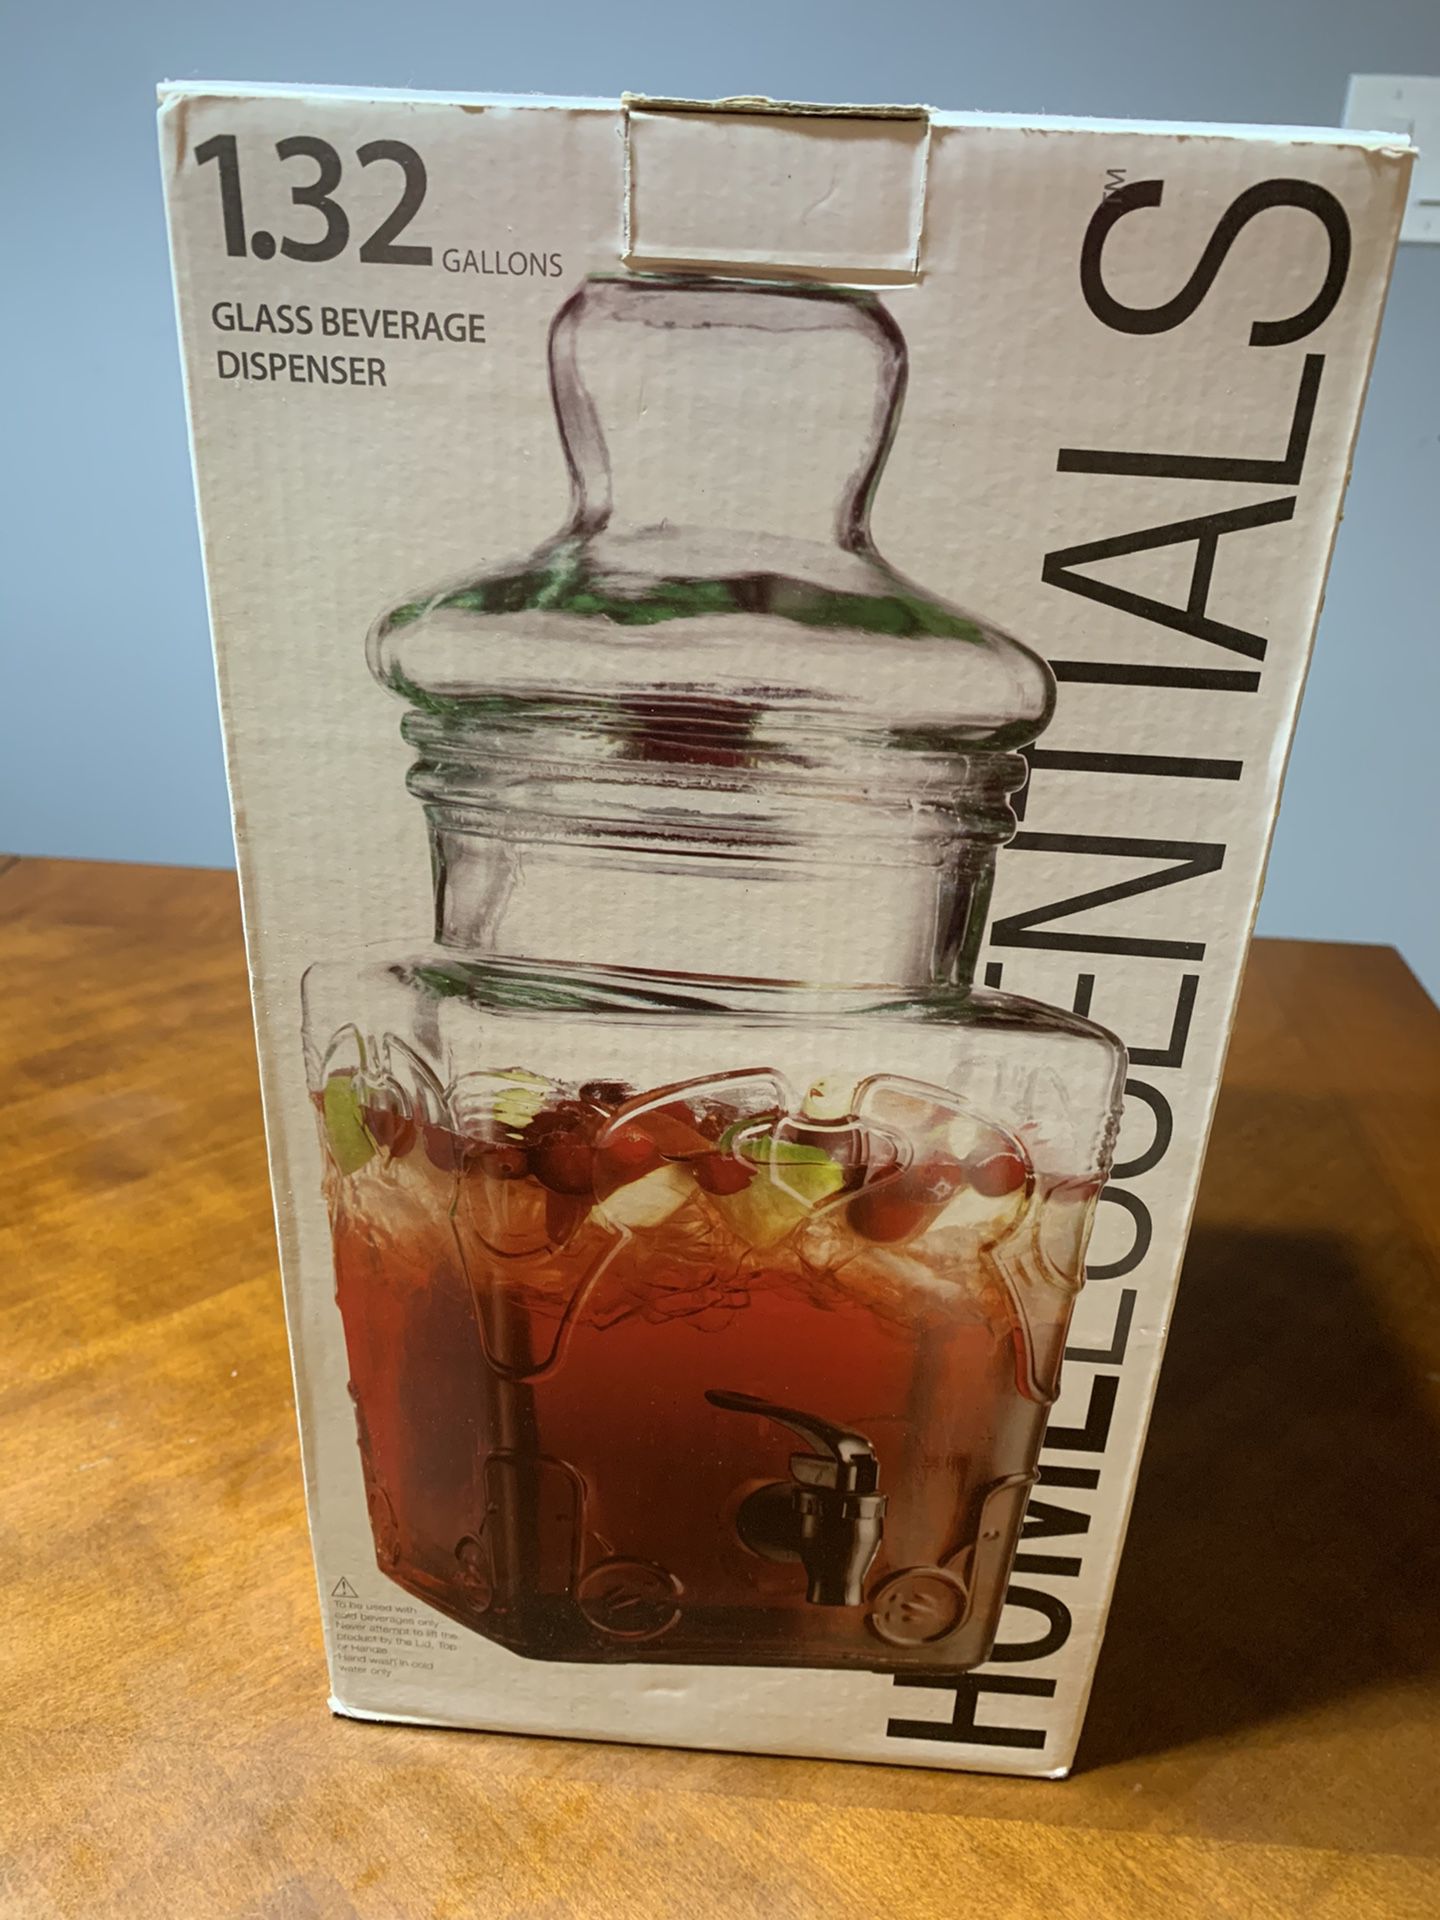 Homessentials glass drink dispenser 1.32 gallons